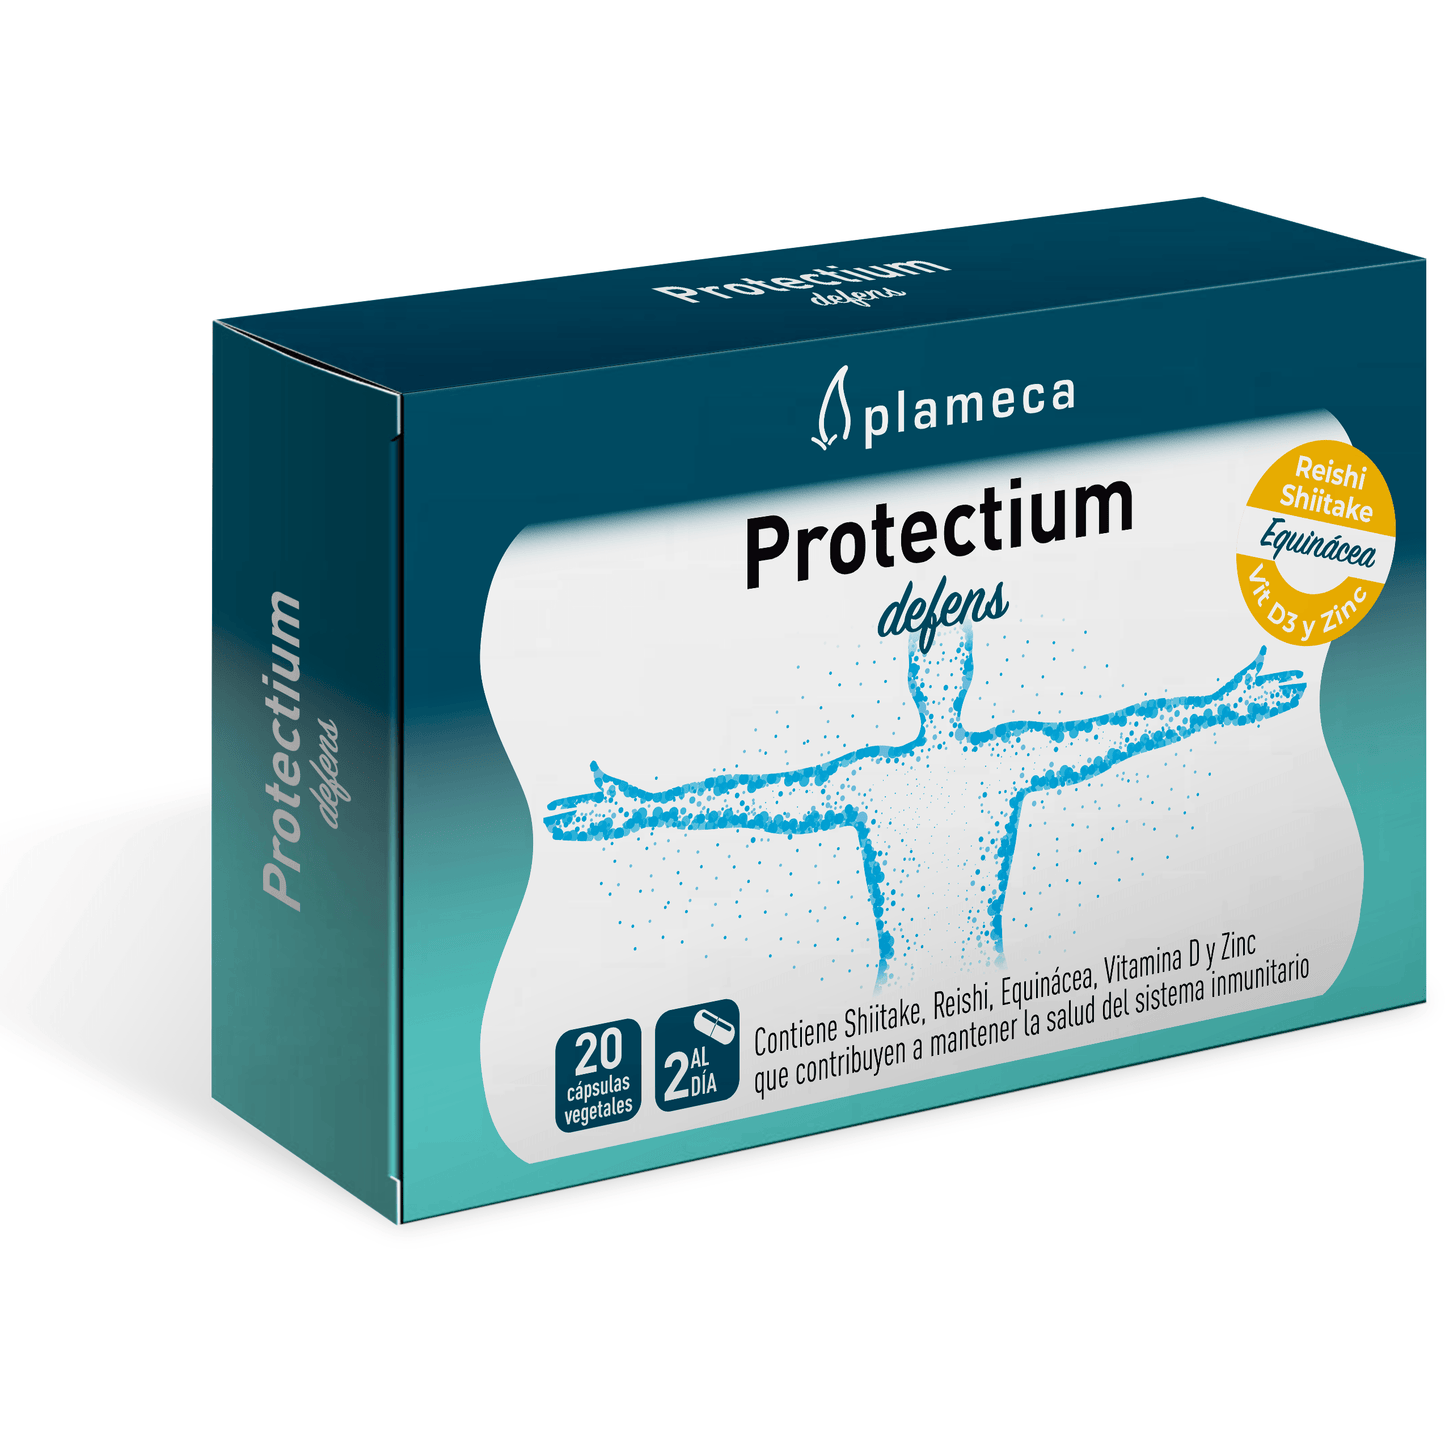 Protectium Defens 20 Cápsulas | Plameca - Dietetica Ferrer